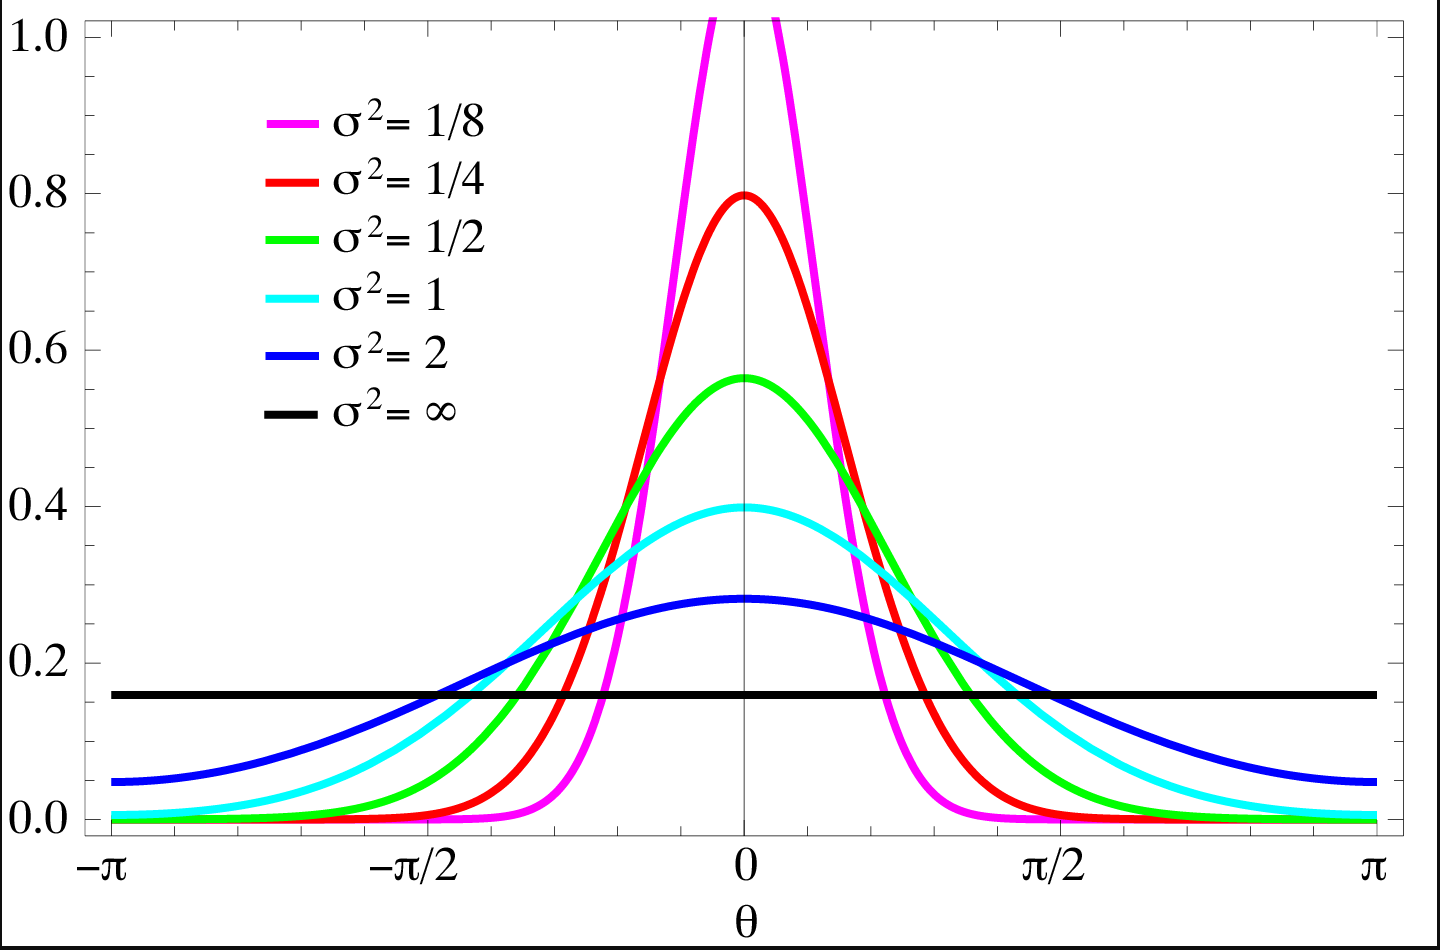 Imagem colorida de um gráfico com funções de distribuições estatísticas normais com diferentes valores de desvio padrão, os valores observados são: 1/8, 1/4, 1/2, 1, 2 e infinito positivo